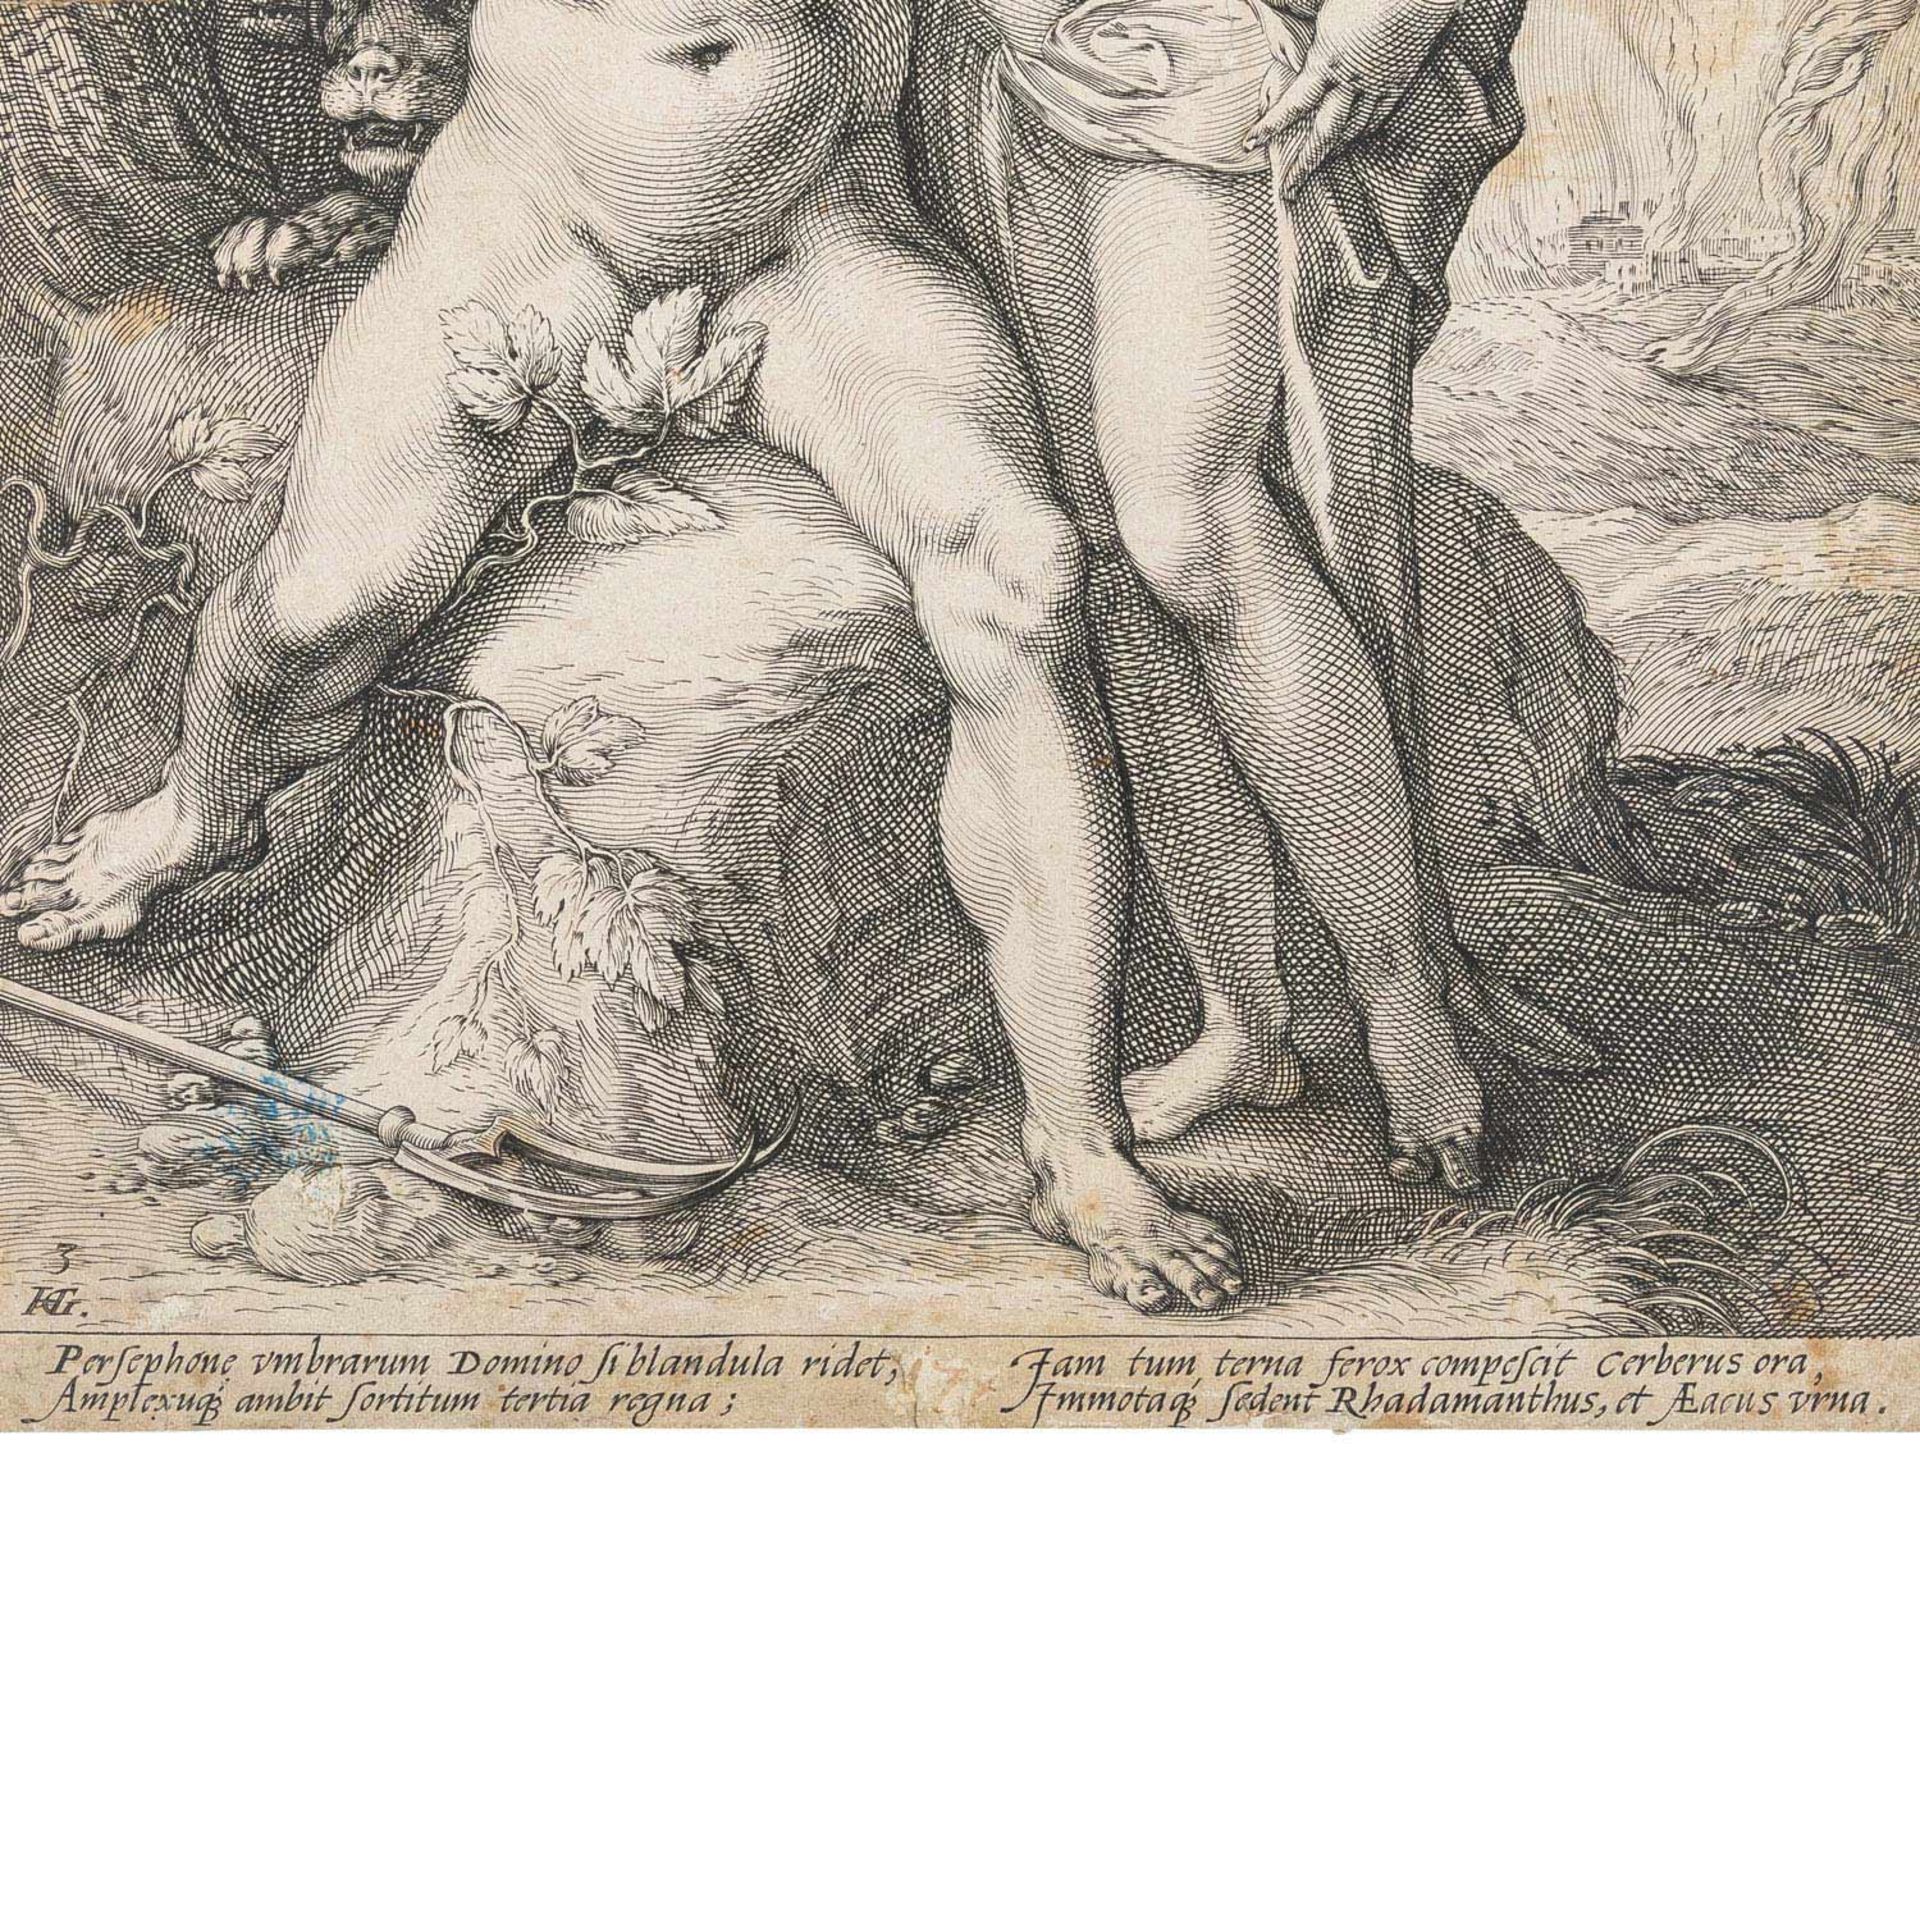 GOLTZIUS, HENDRICK (1558-1617), "Persephone vmbrarum Domino ... et AEacus vrna", - Image 3 of 4